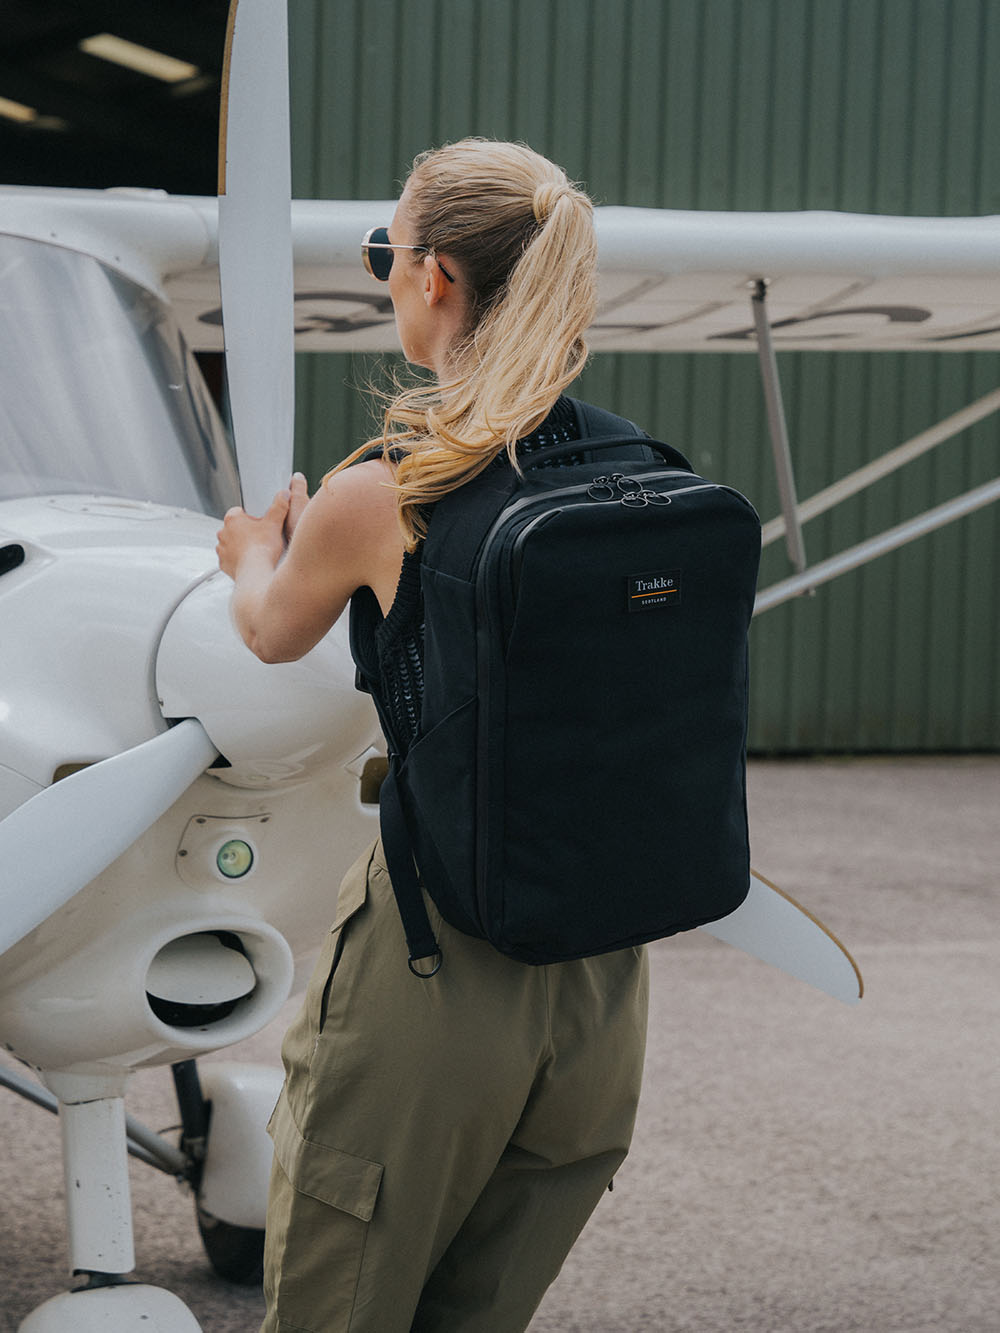 Storr 35L Travel Backpack – Carry-On Backpack | Trakke